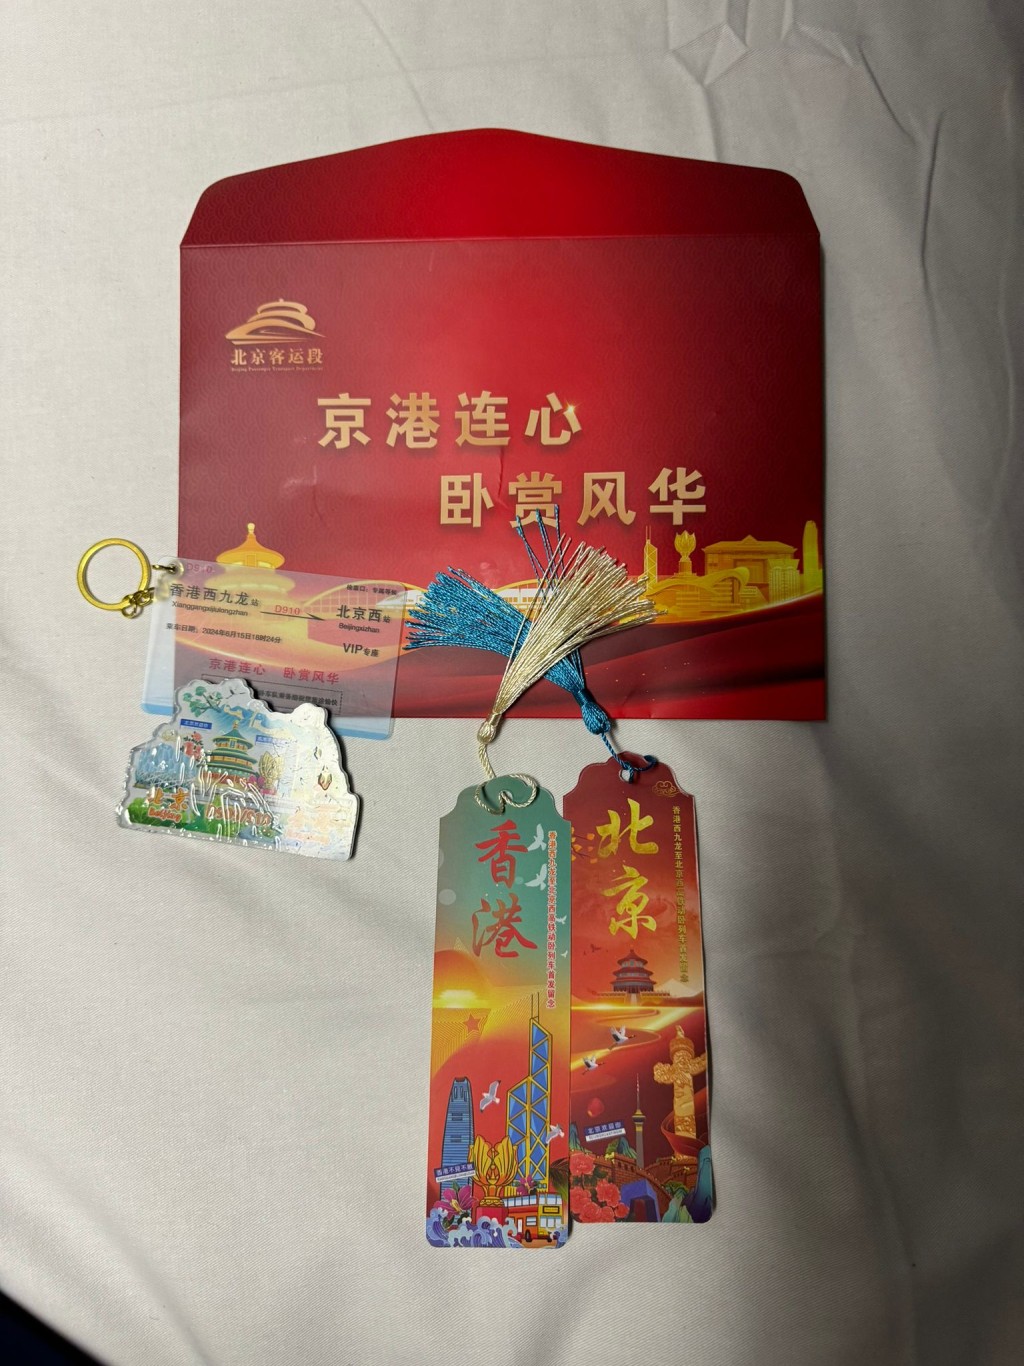 北京铁路局向乘客送纪念礼物包。谢宗英摄